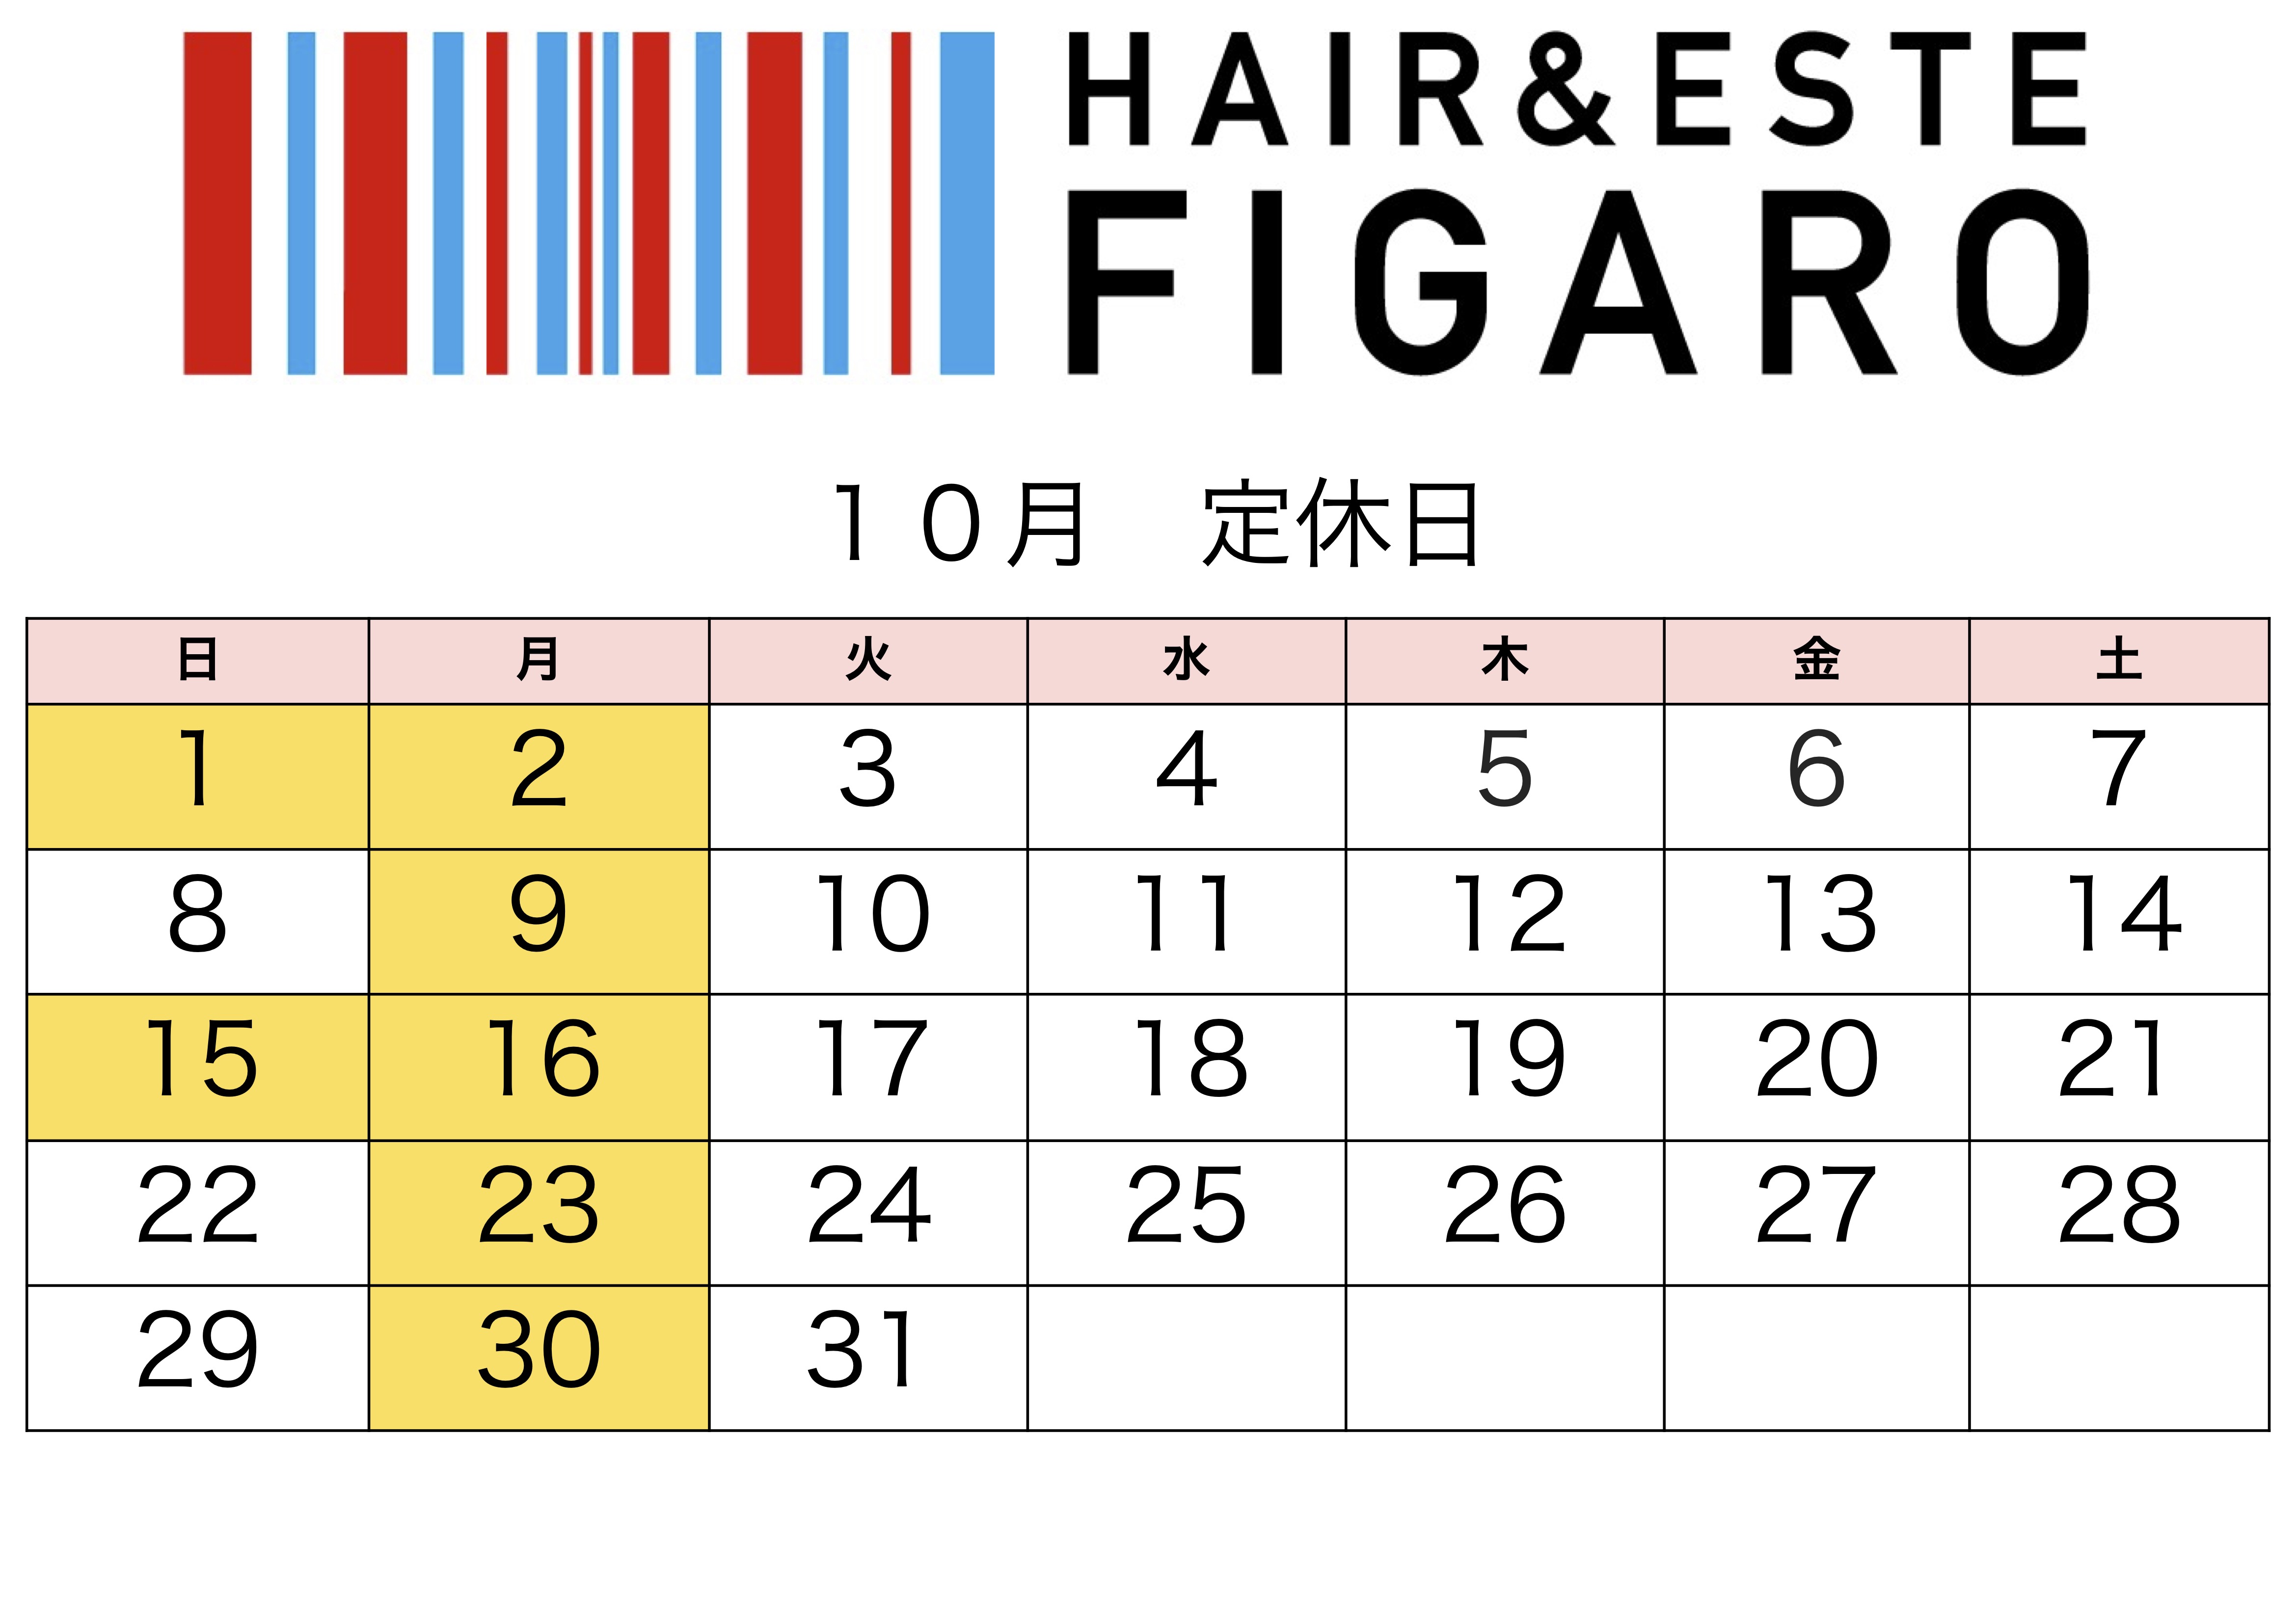 http://figaro-hair.com/blog/%EF%BC%92%EF%BC%90%EF%BC%92%EF%BC%93%EF%BC%91%EF%BC%90.jpg